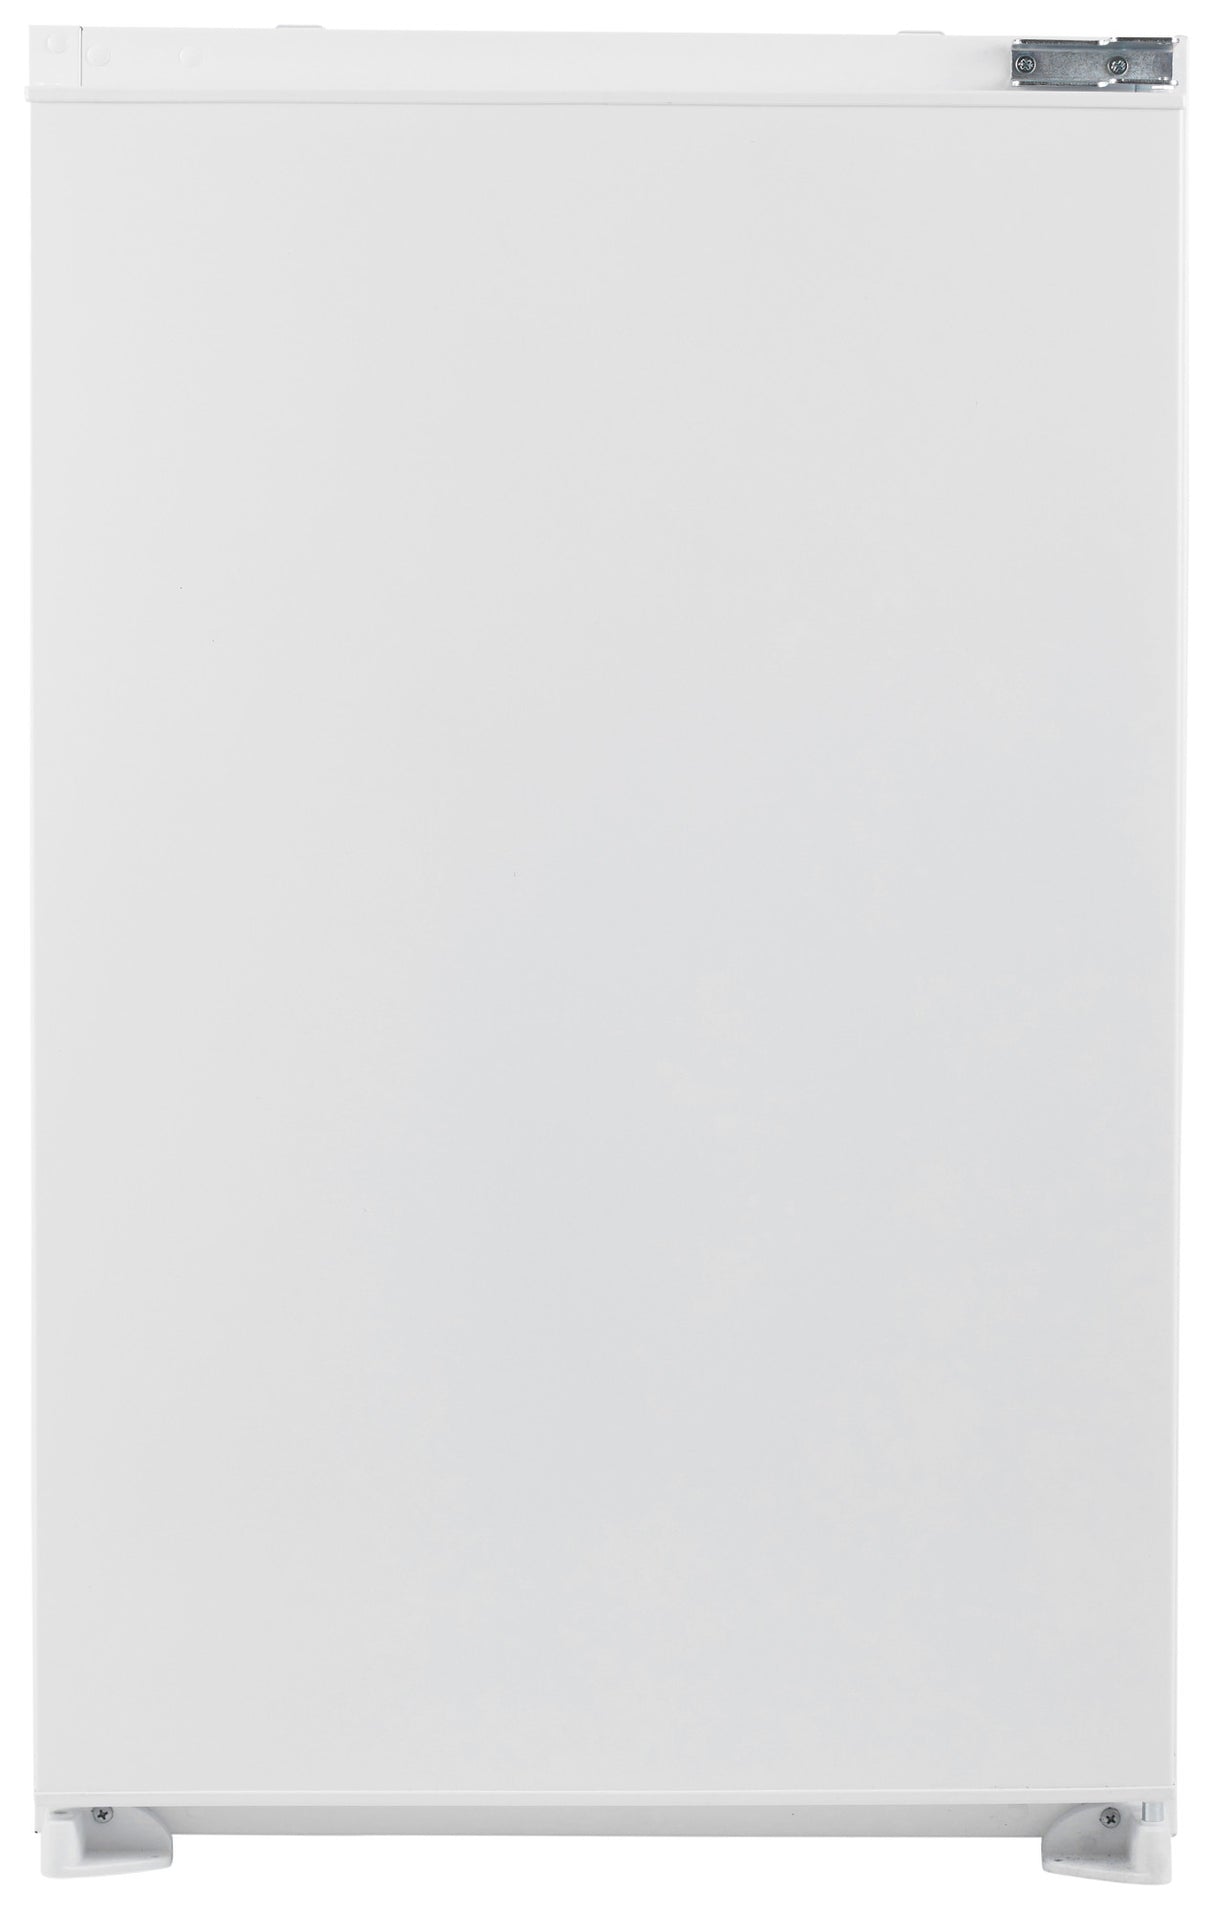 Whirlpool geïntegreerde koelkast: kleur wit - ARG 94312